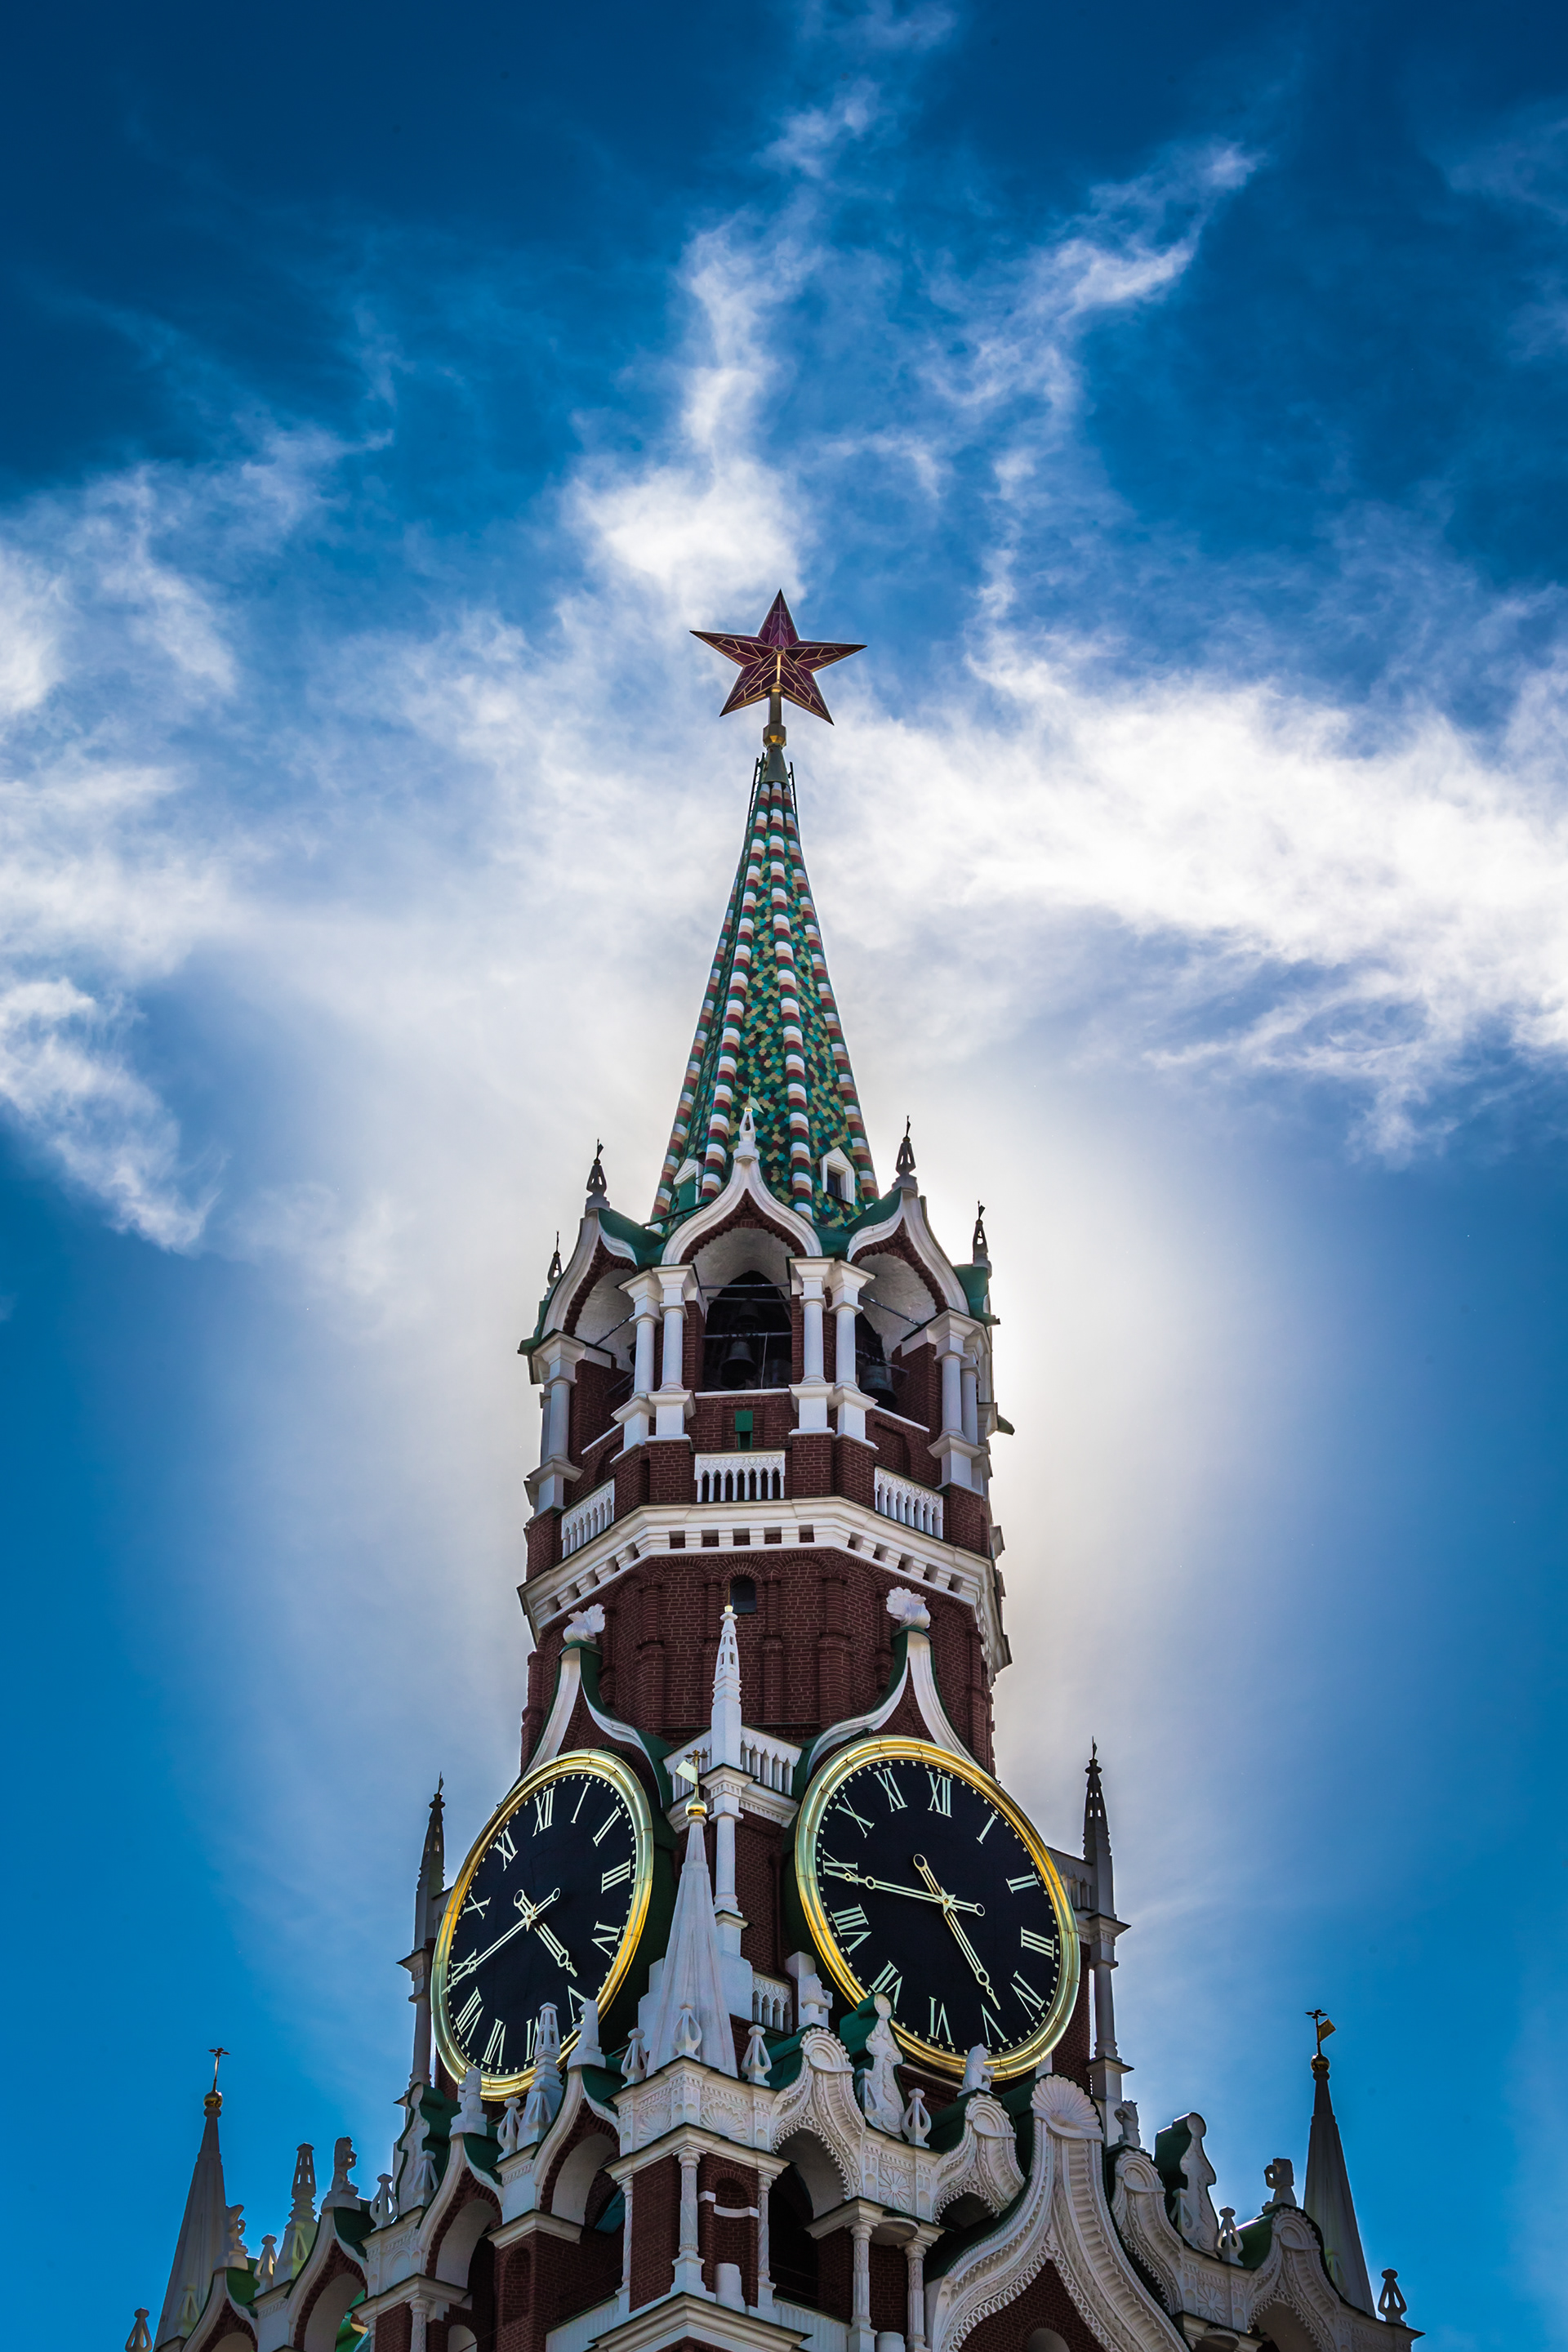 Часы на башнях кремля